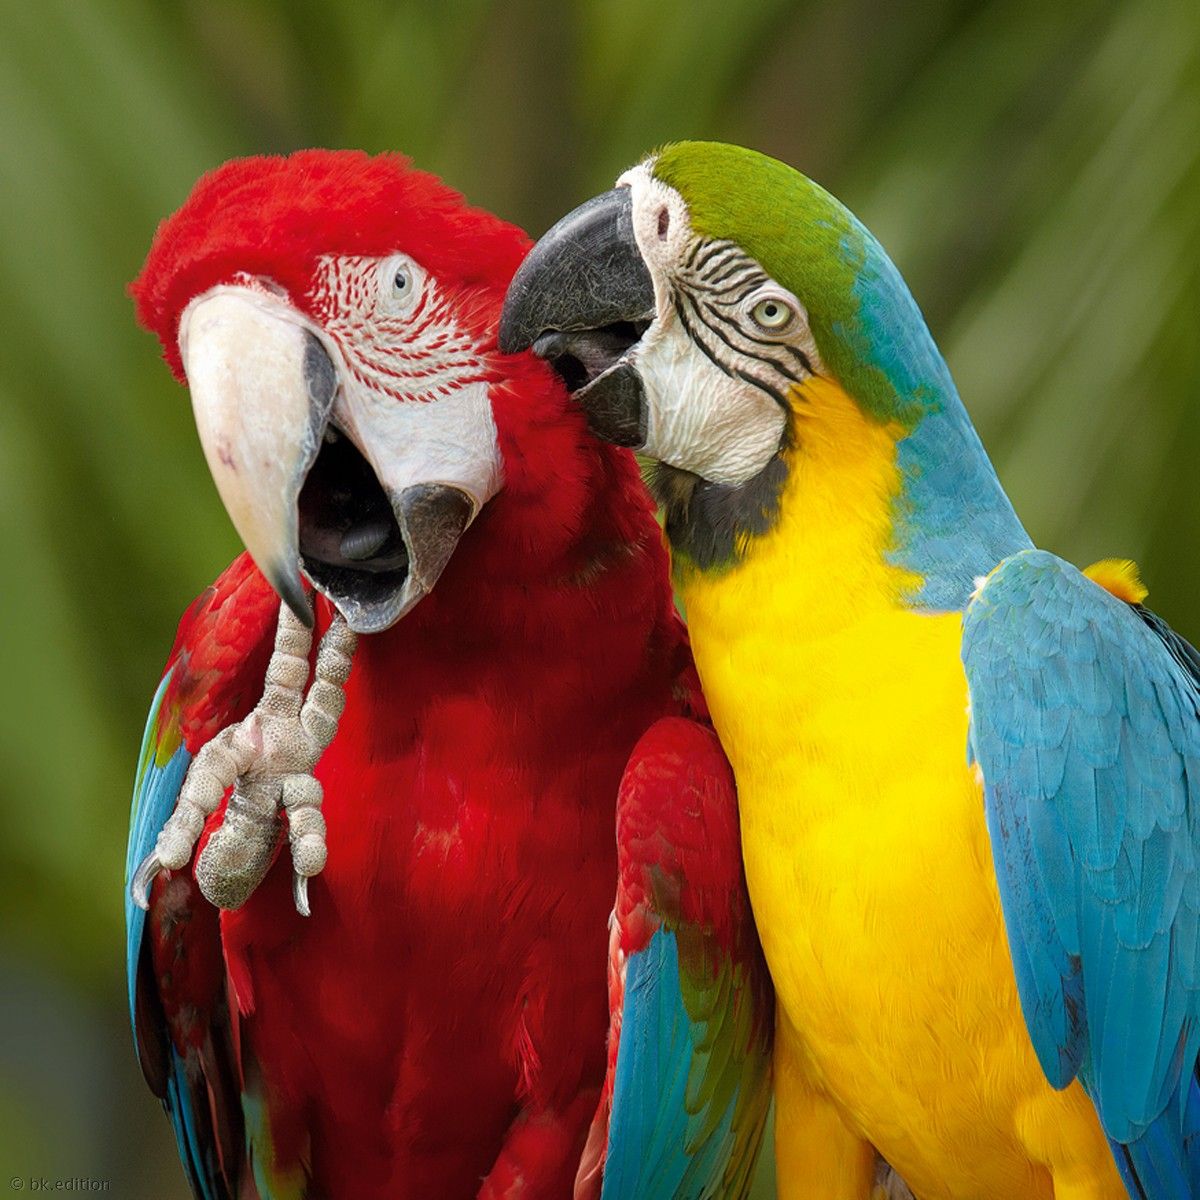 Говорящий попугай: какие птицы легче всего учатся говорить